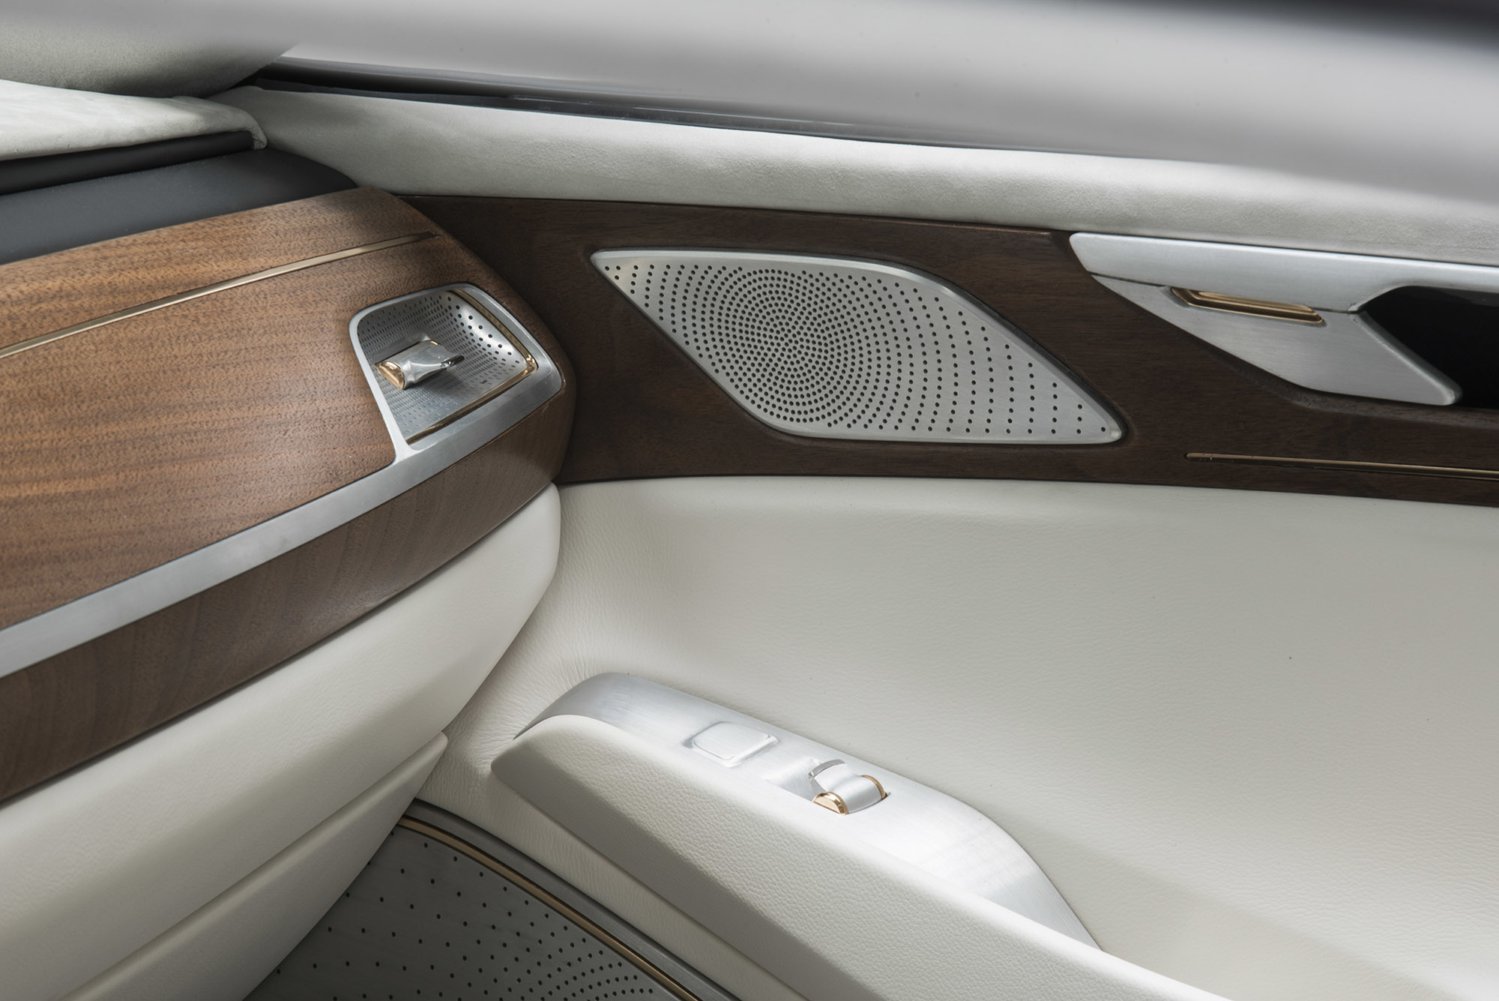 Hyundai Vision G je plný těch nejkvalitnějších materiálů včetně pravé kůže, dřeva a leštěného hliníku.